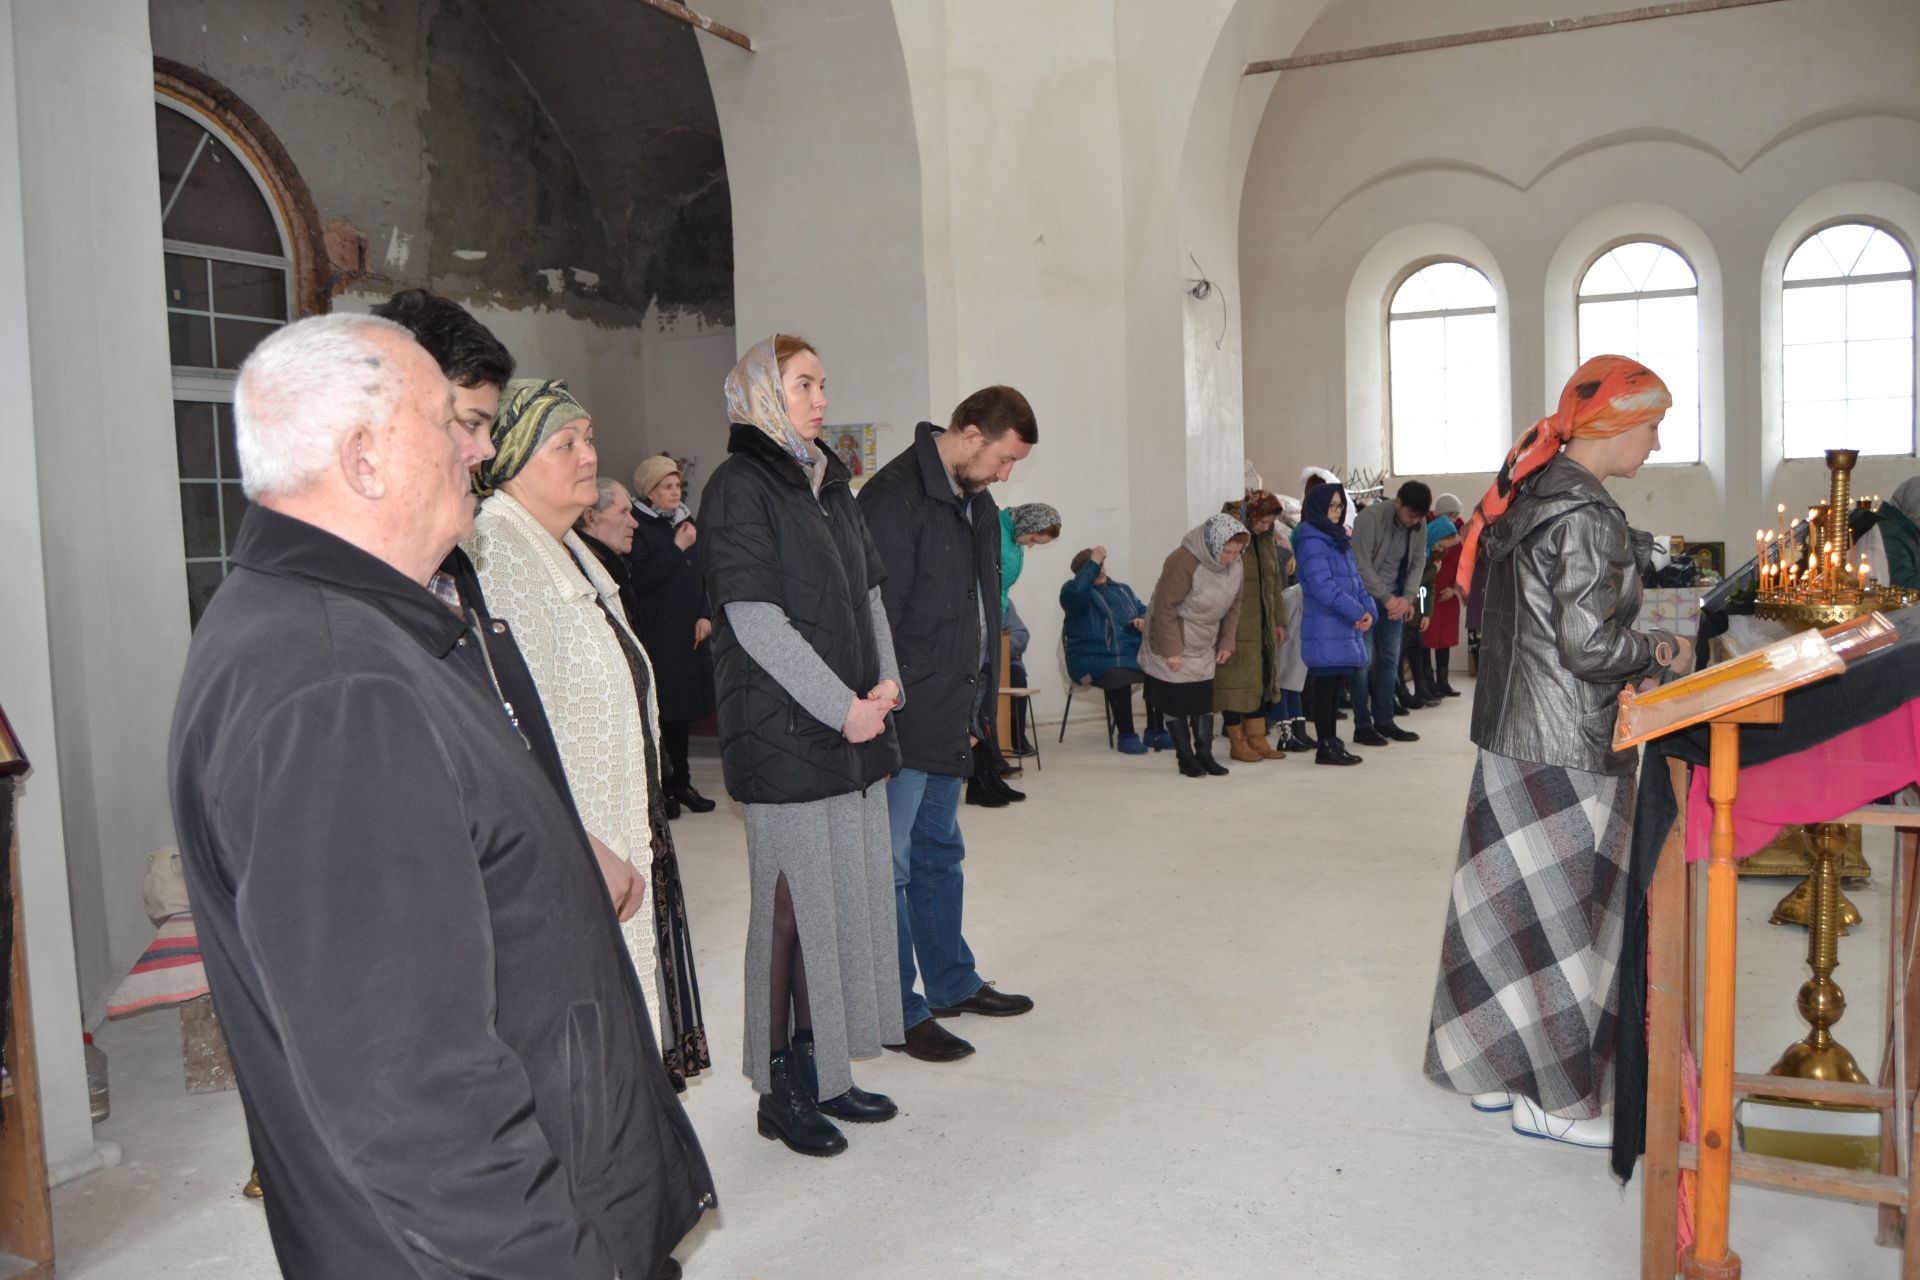 Божественная литургия в Благовещение прошла в храме Святителя Николая Чудотворца